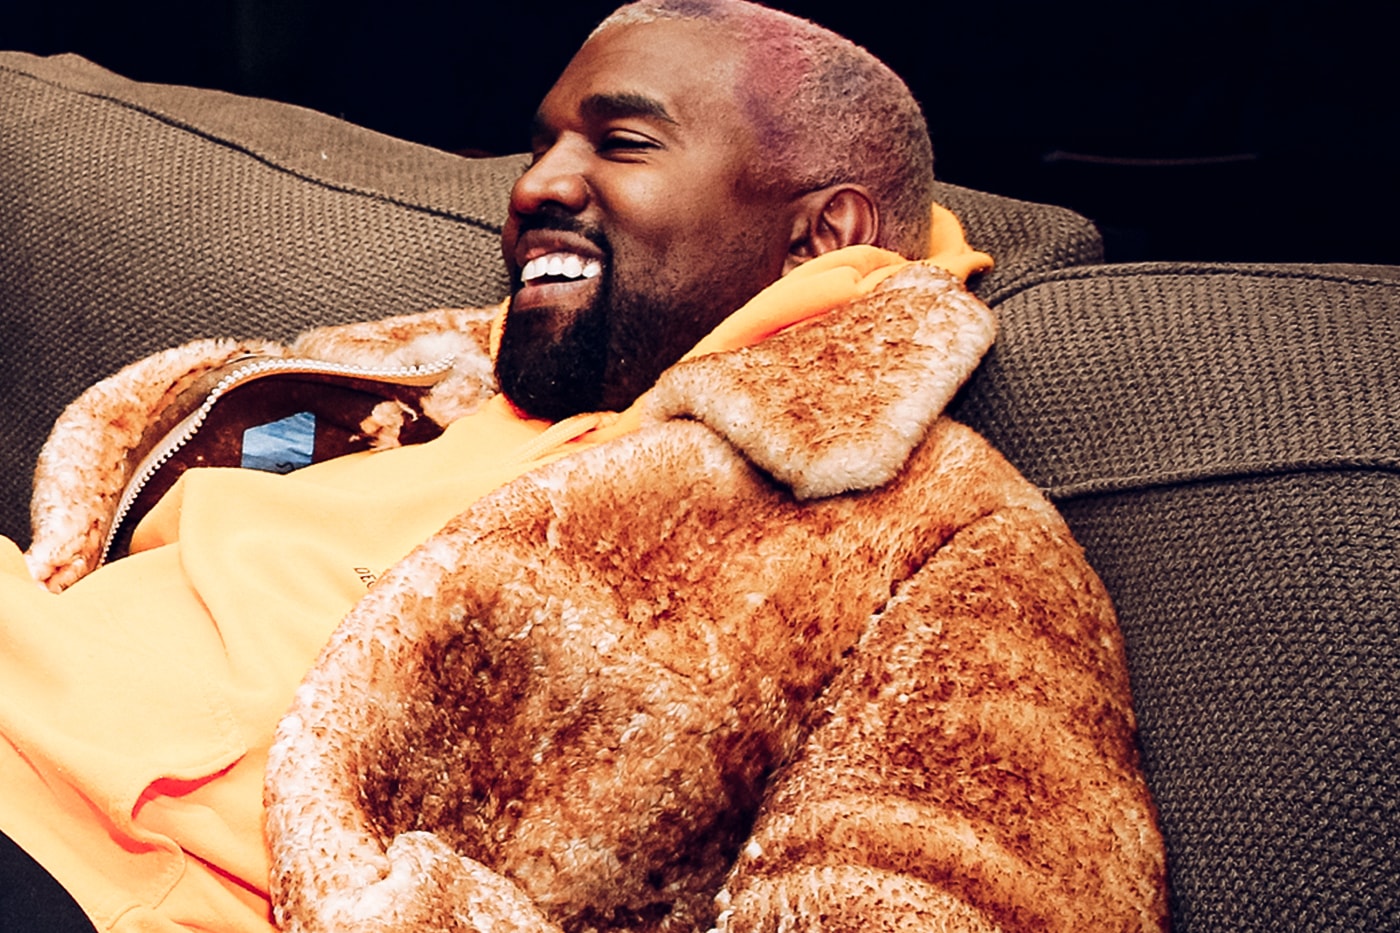 报导称 Kanye West 即将推出居家产品系列